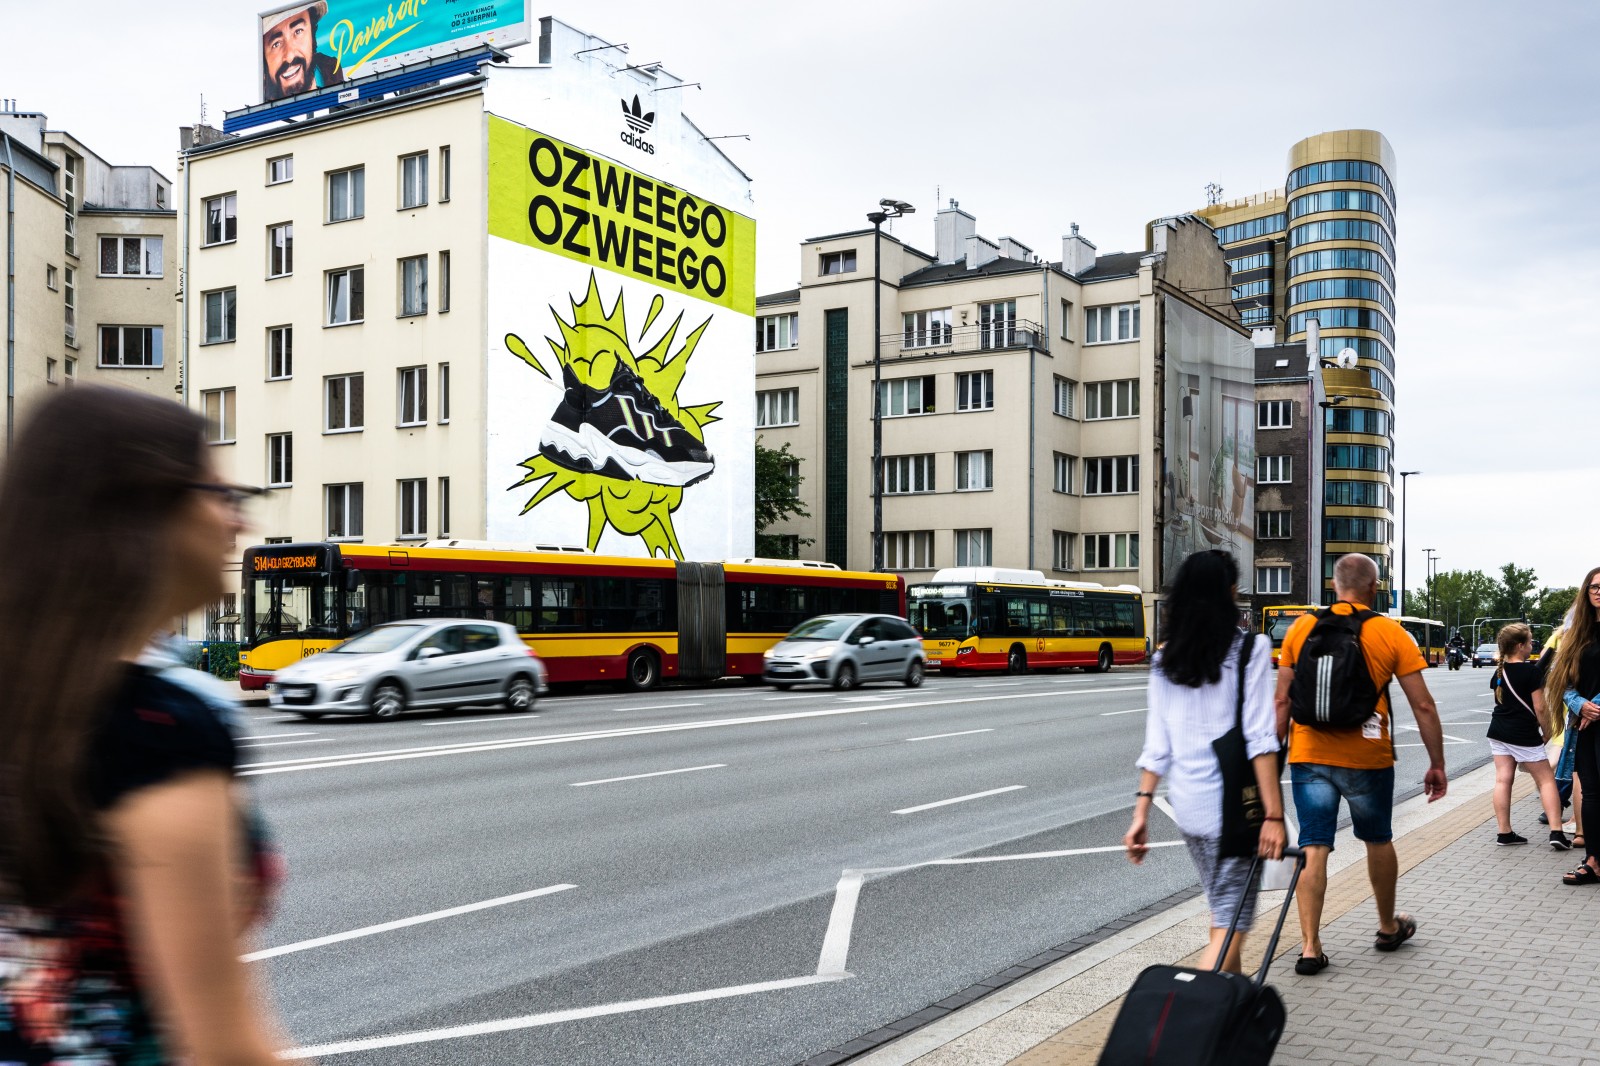 Ręcznie malowana reklama dla Adidasa ul. Jaworzyńska 8 w Warszawie | Adidas Ozweego | Portfolio